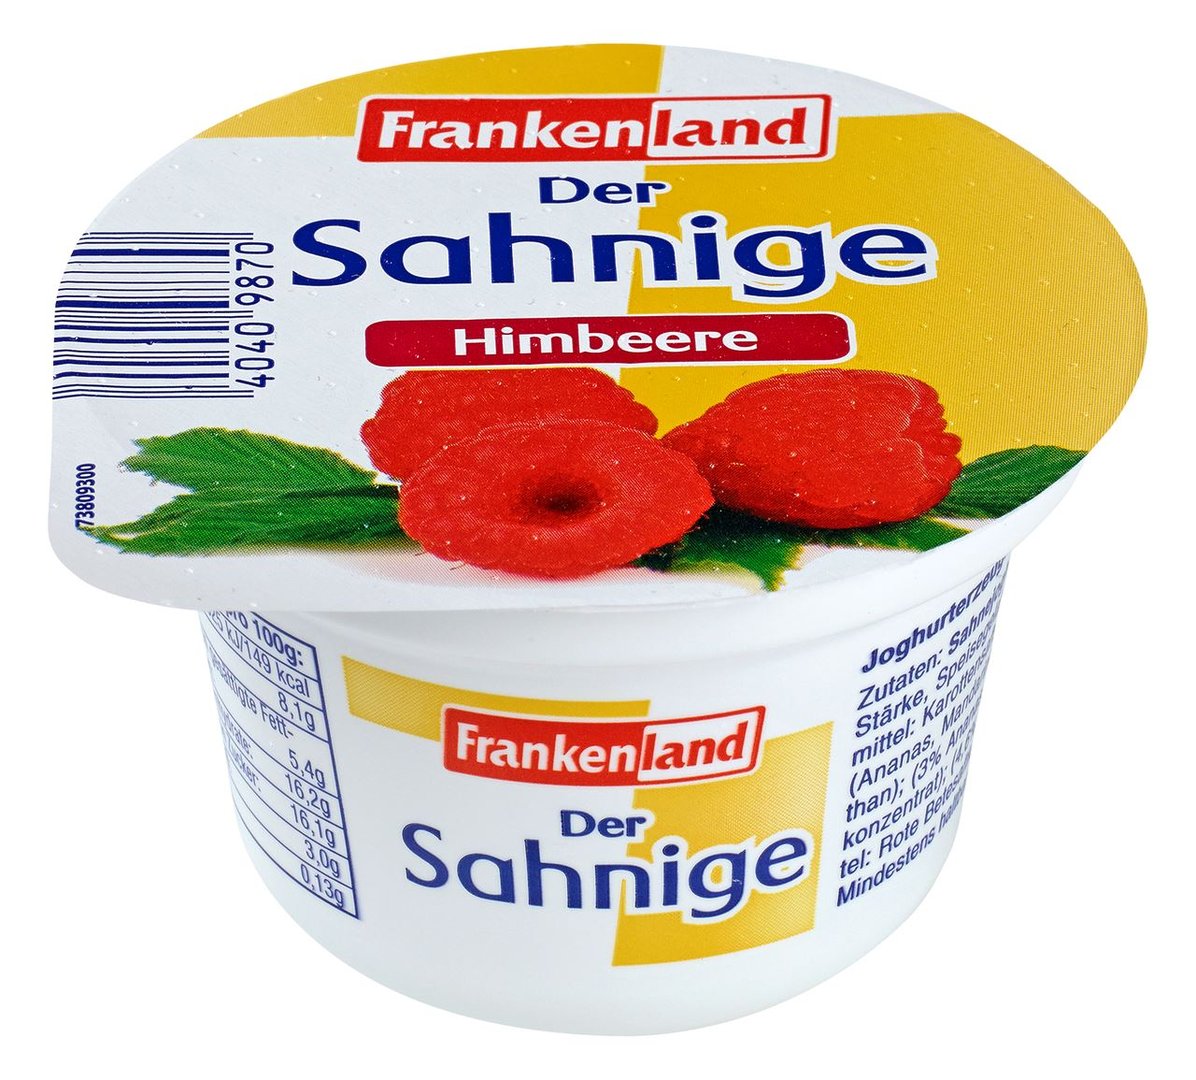 Frankenland - Der Sahnige Himbeer 10 % Fett im Milchanteil - 75 g Becher